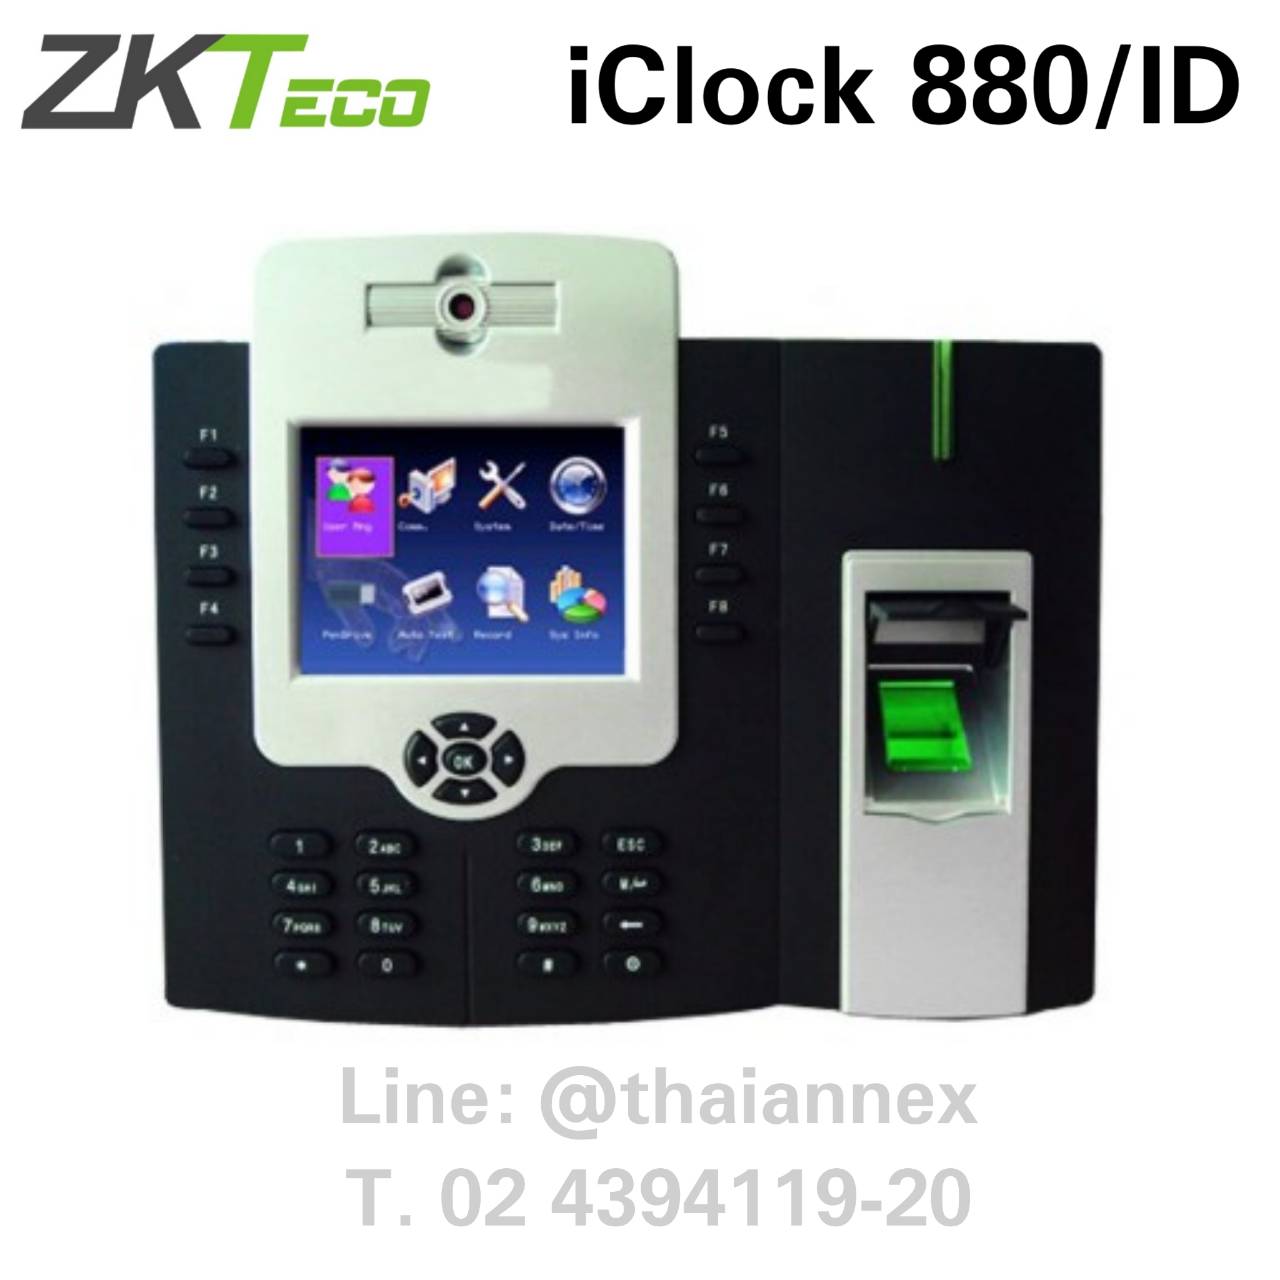 เครื่องสแกนลายนิ้วมือ ZK iClock880/ID (Access Control)